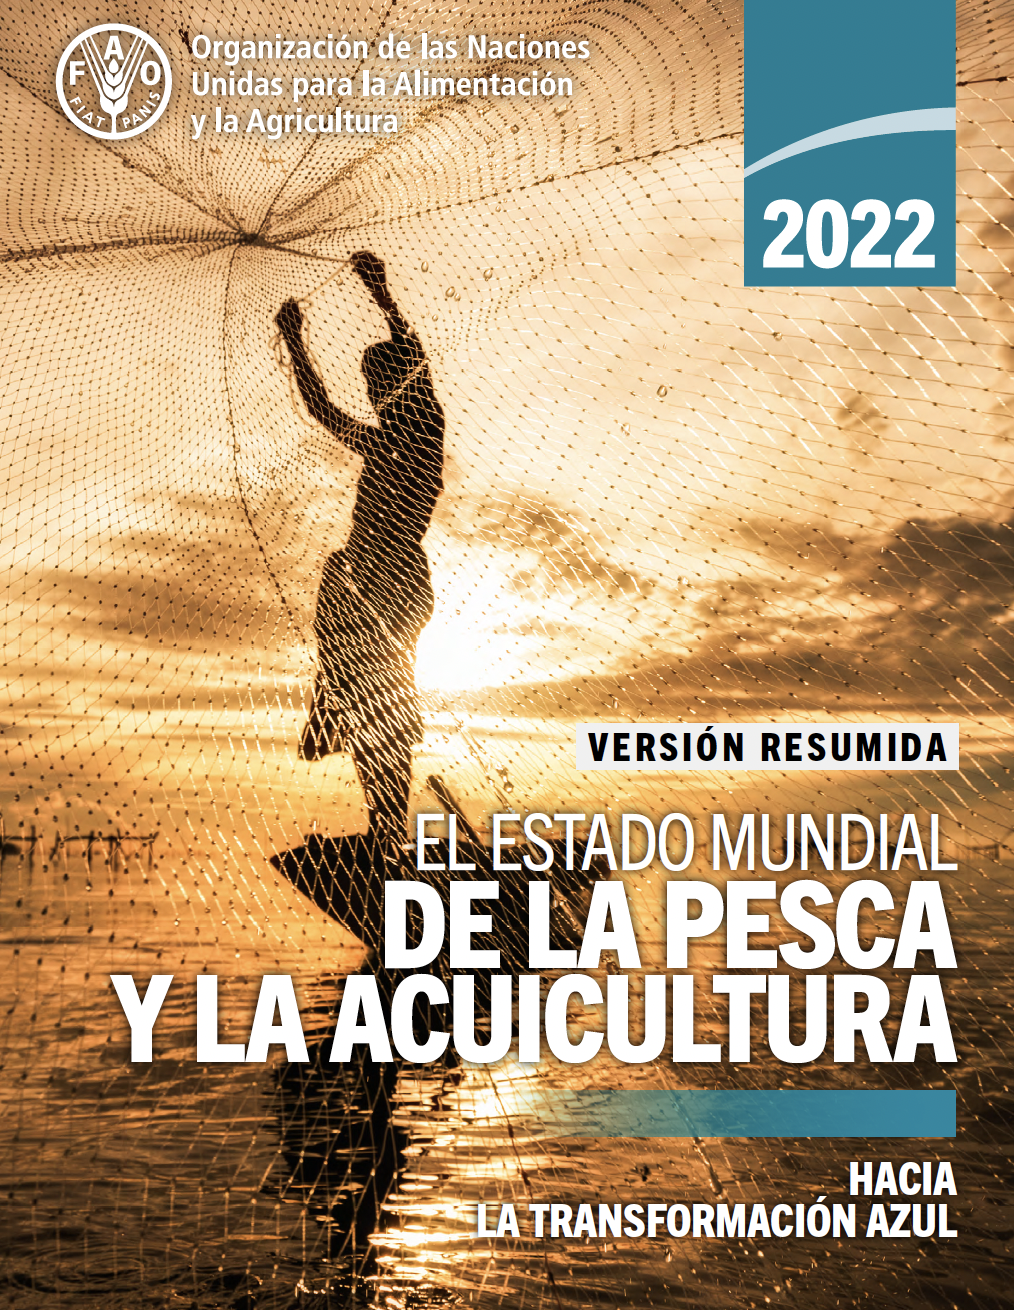 El estado mundial de la pesca y la acuicultura 2022